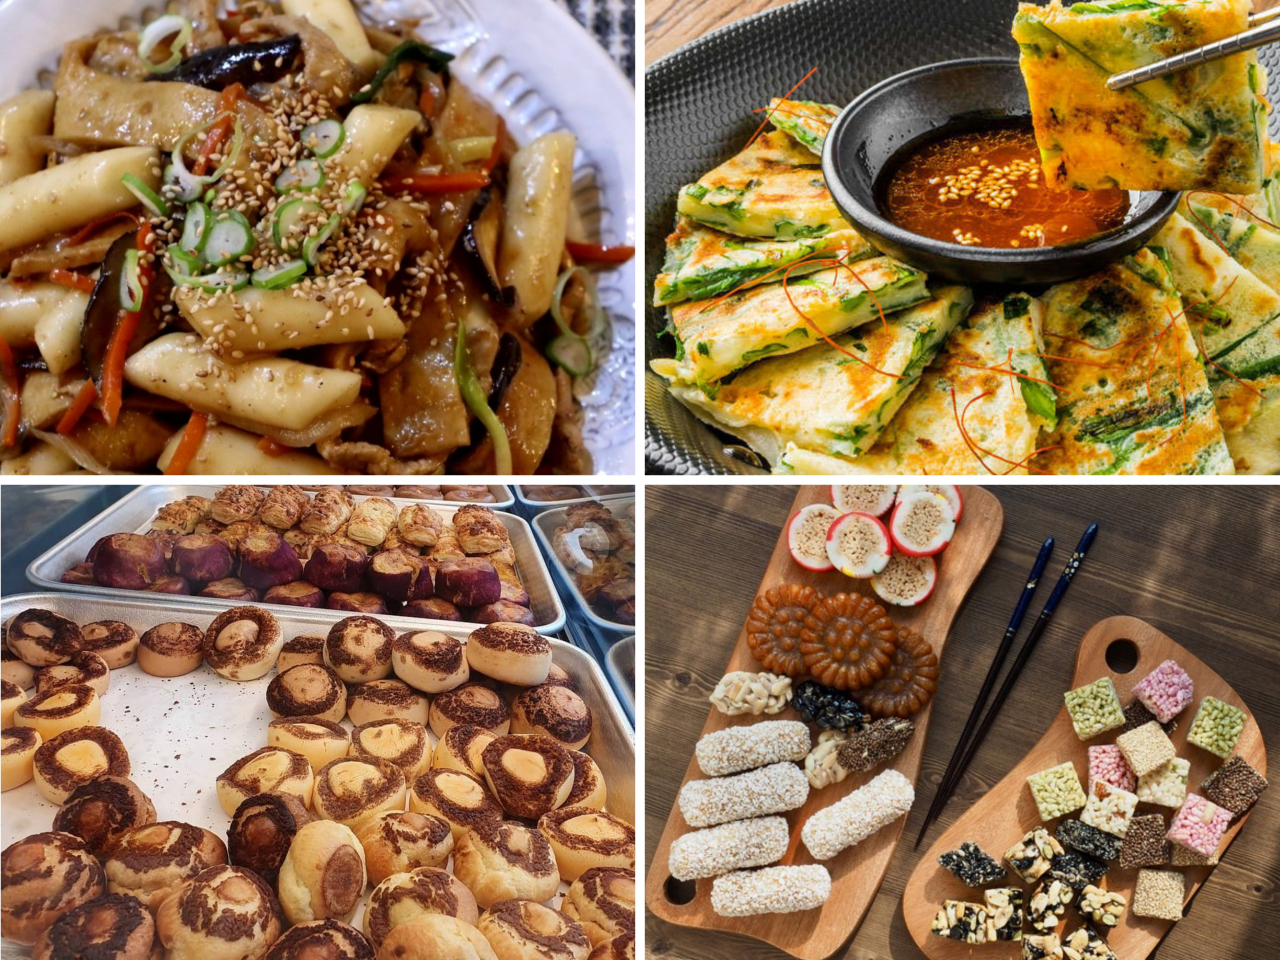 Fotogalerij (met de klok mee van linksboven) toont tteokbokki, jeon, traditionele Koreaanse desserts en kastanjesnacks die dit jaar zijn verkocht op het Namsan K-Food Festa